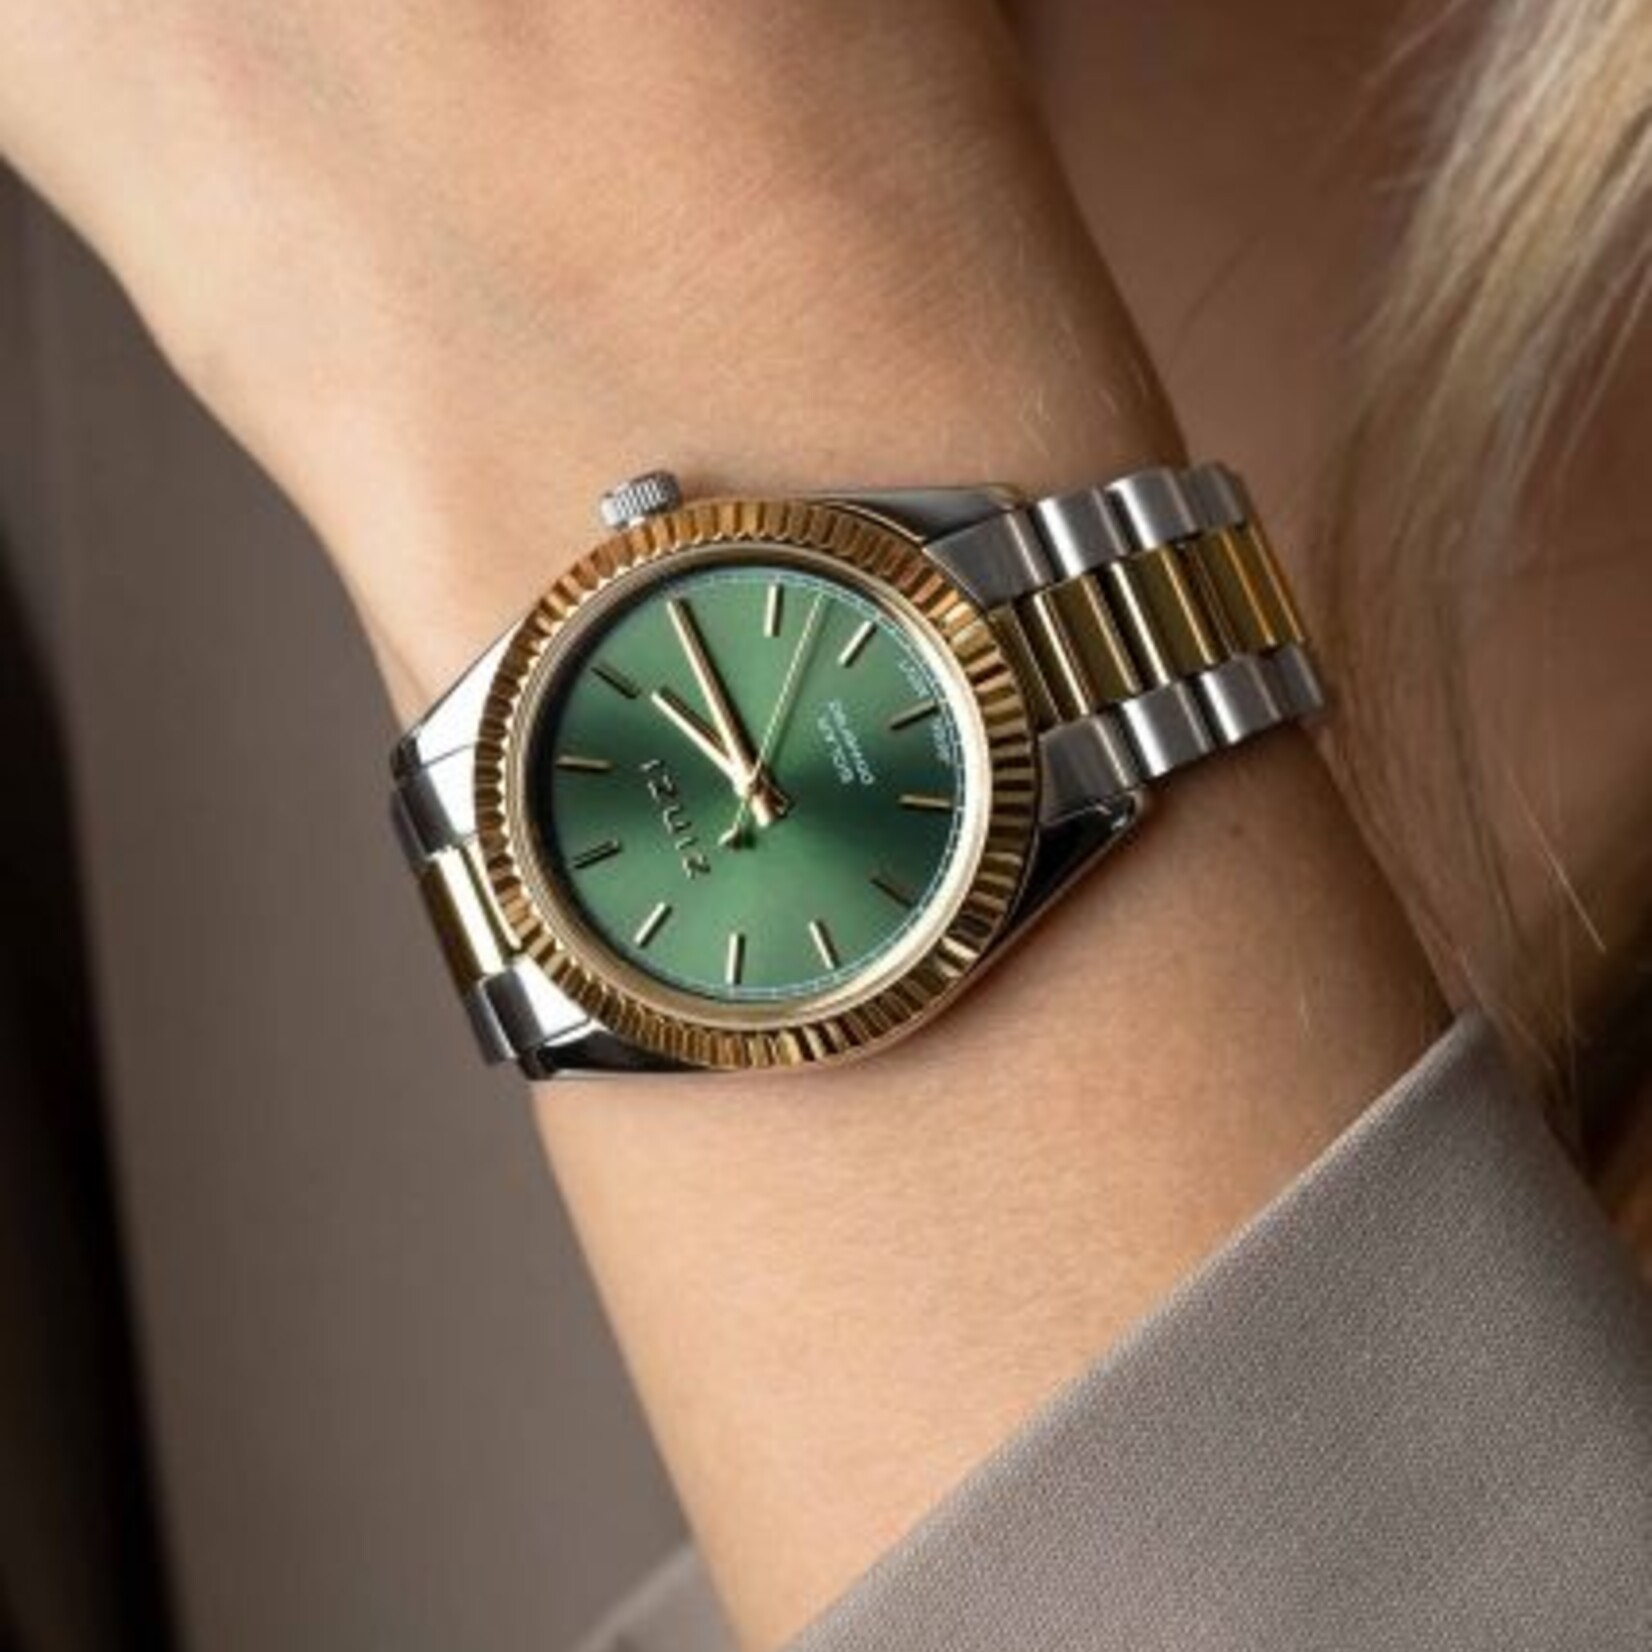 Zinzi ZINZI Solaris horloge met groene wijzerplaat, stalen bicolor kast 35mm en stalen bicolor band met clip-sluiting. Het Japanse uurwerk loopt op zon- en kunstlicht ZIW2135